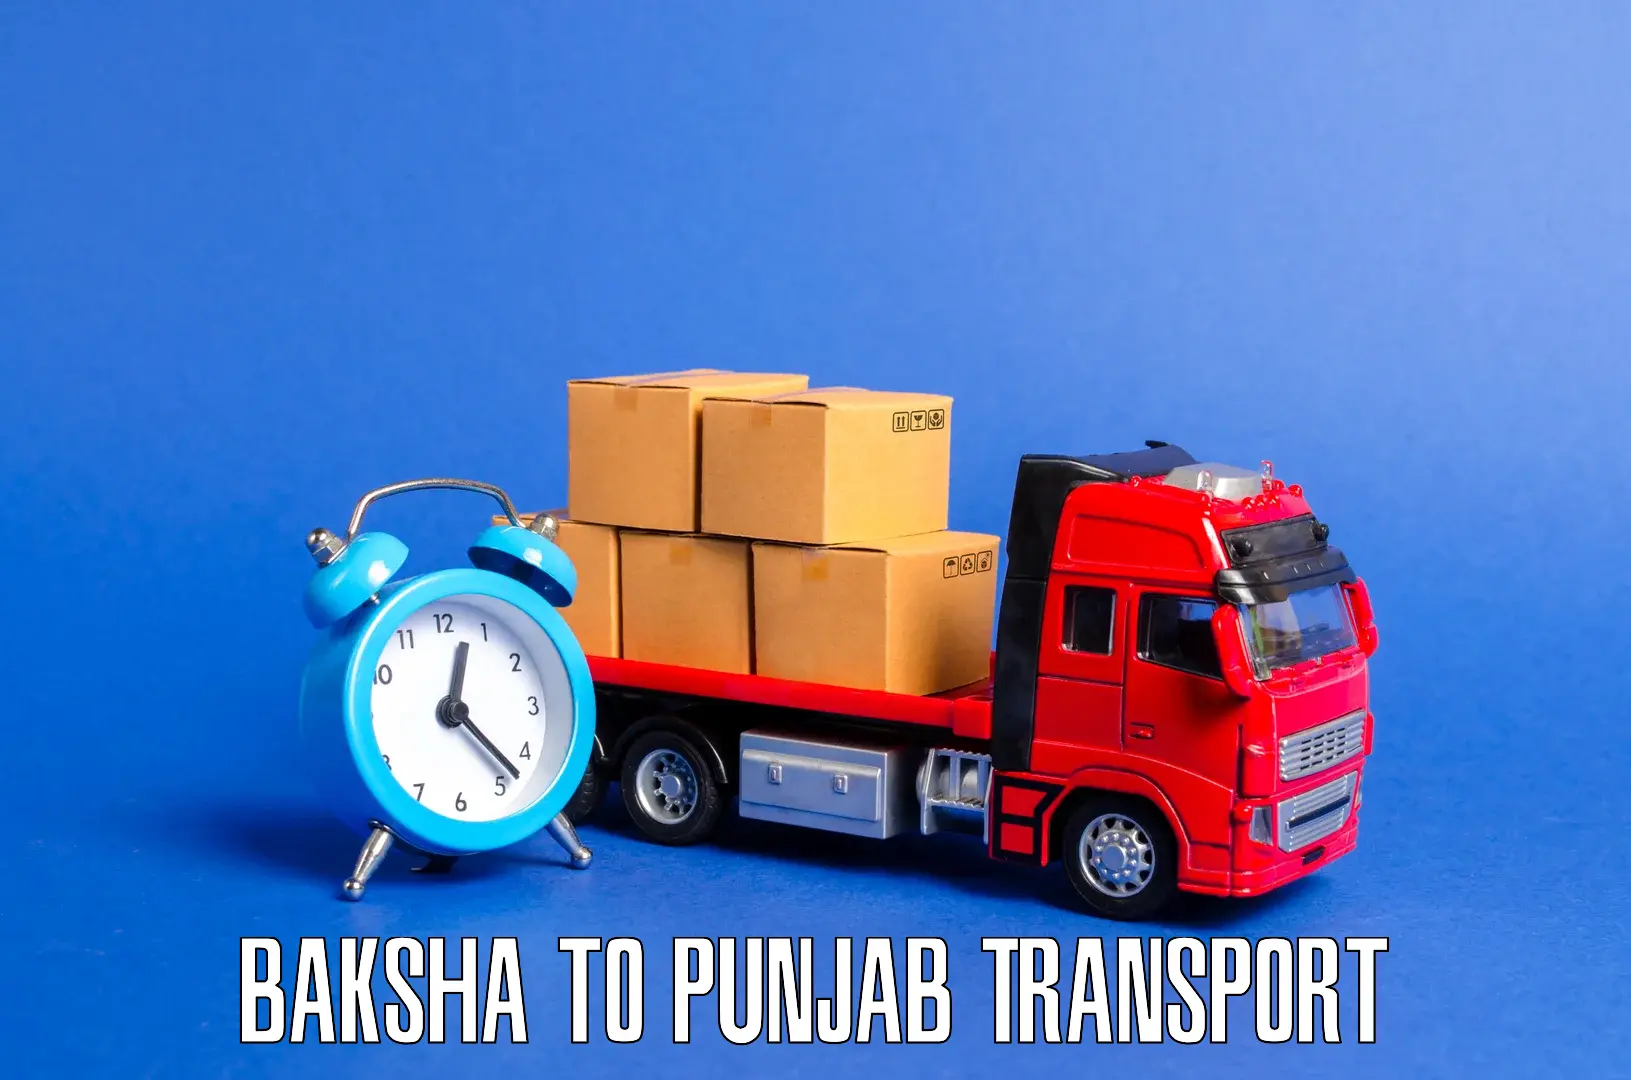 Vehicle parcel service in Baksha to Punjab